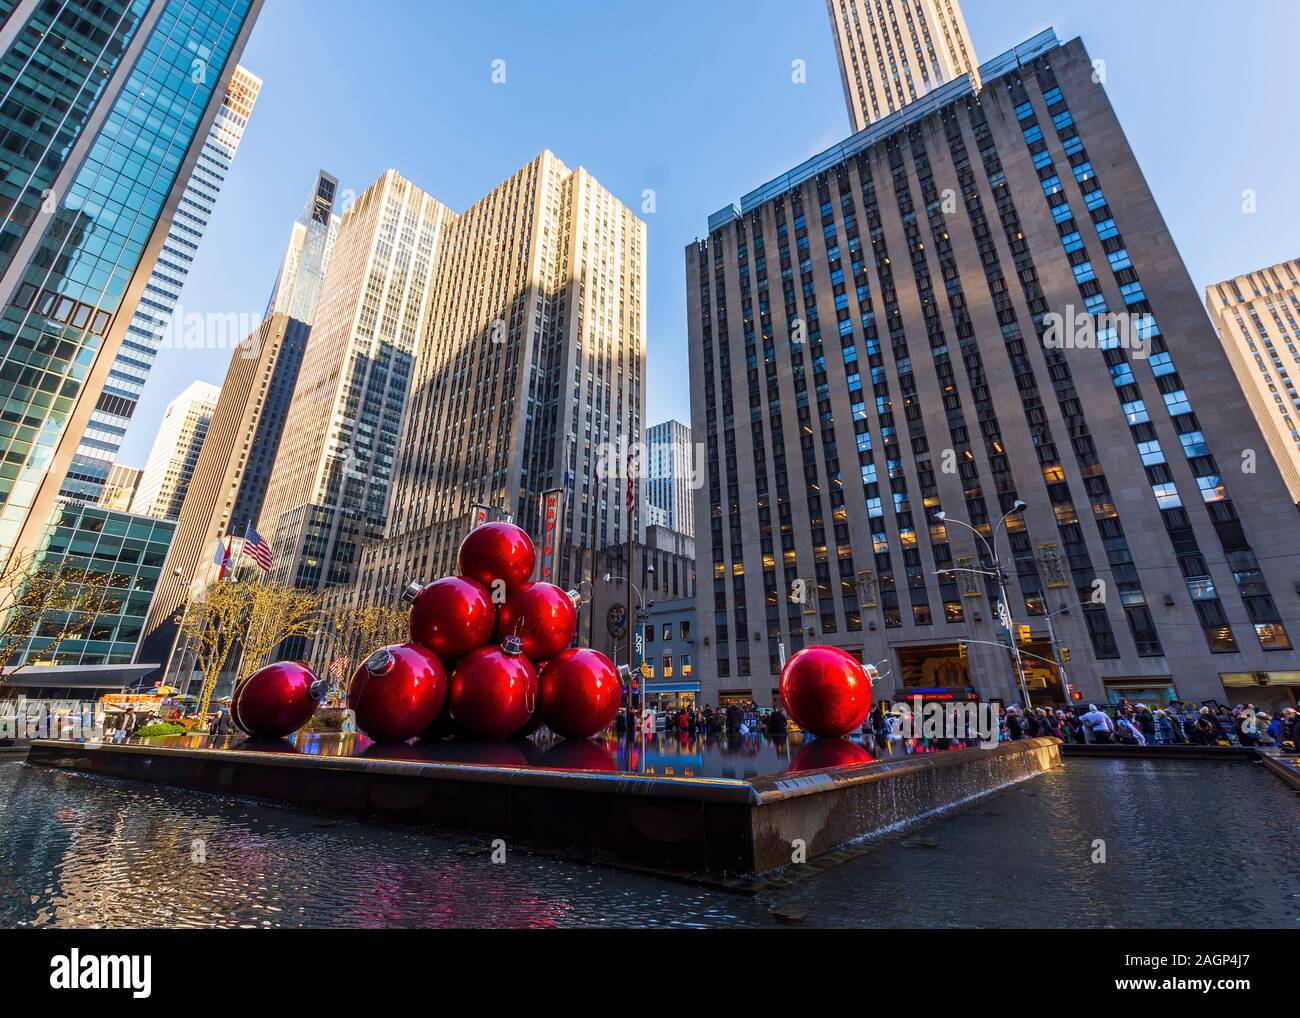 New York, NY, USA - November 30, 2019. Streets of Manhattan, Sixth Avenue with huge red Christmas decoration balls, near Radio City Music Hall, NY Stock Photo